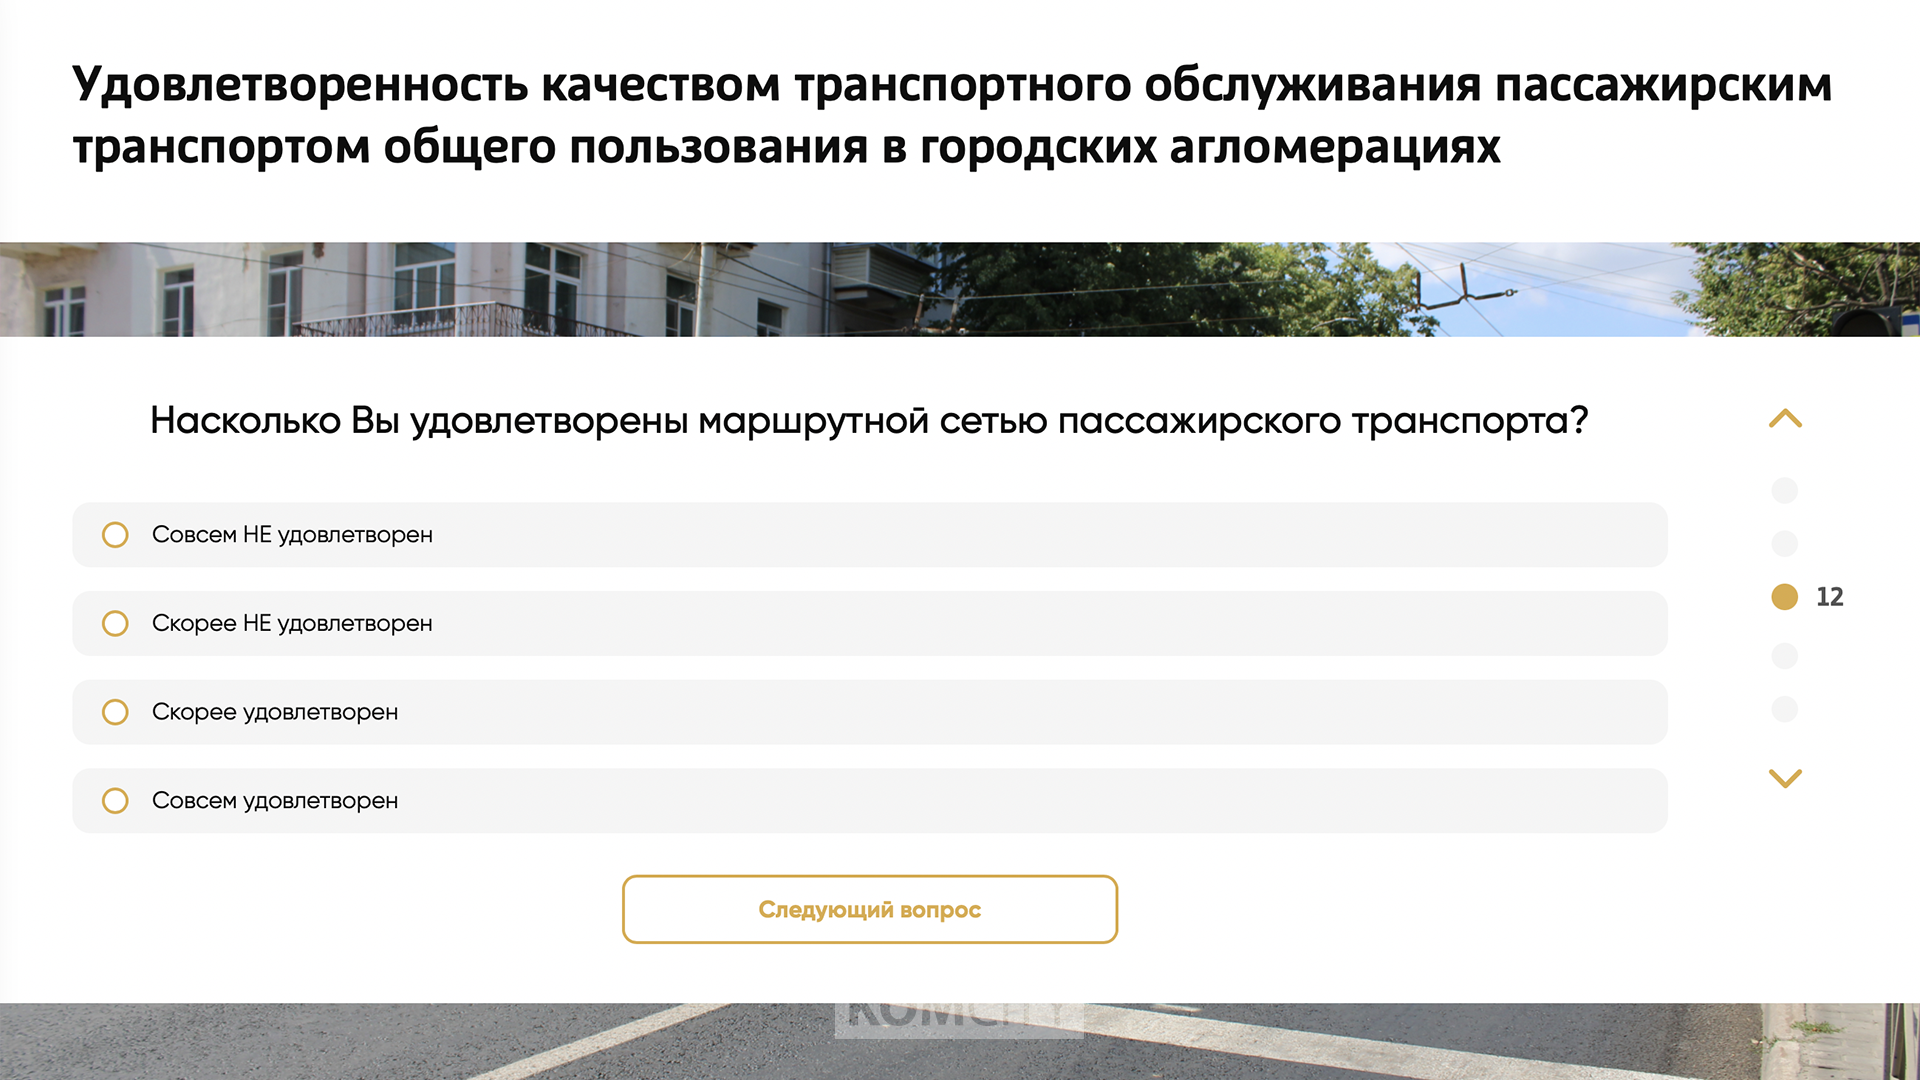 Москва хочет знать, насколько комсомольчане удовлетворены городским общественным транспортом — но есть нюанс